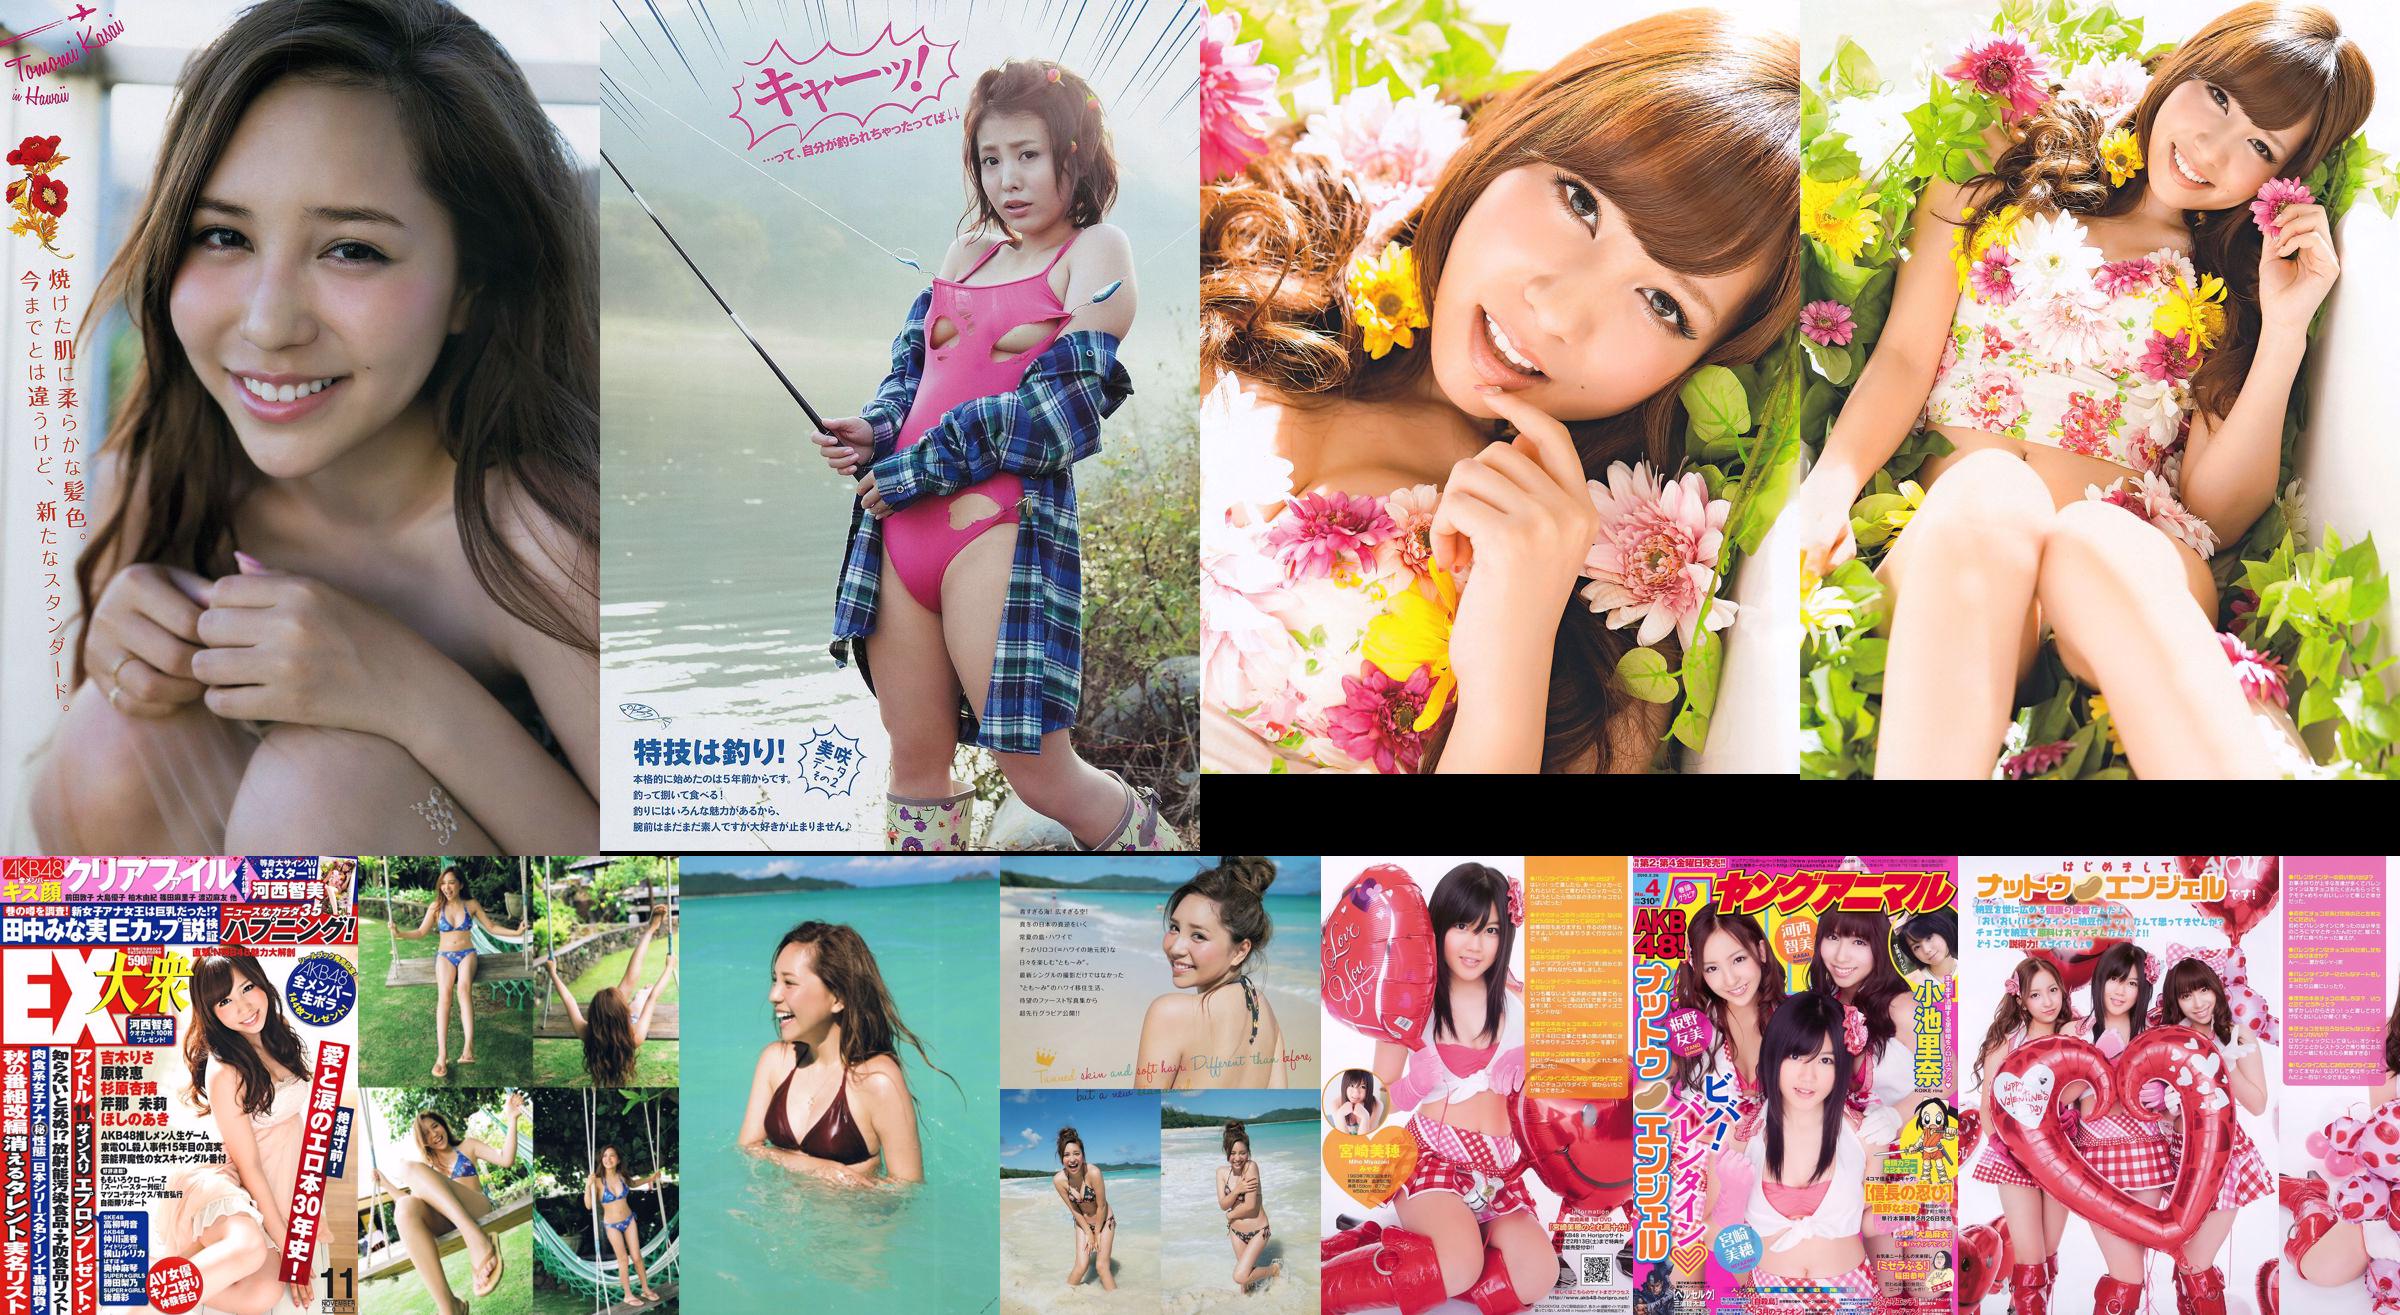 [Junges Magazin] Tomomi Kasai Misaki Yumoto 2014 No.08 Foto No.cf8a50 Seite 1